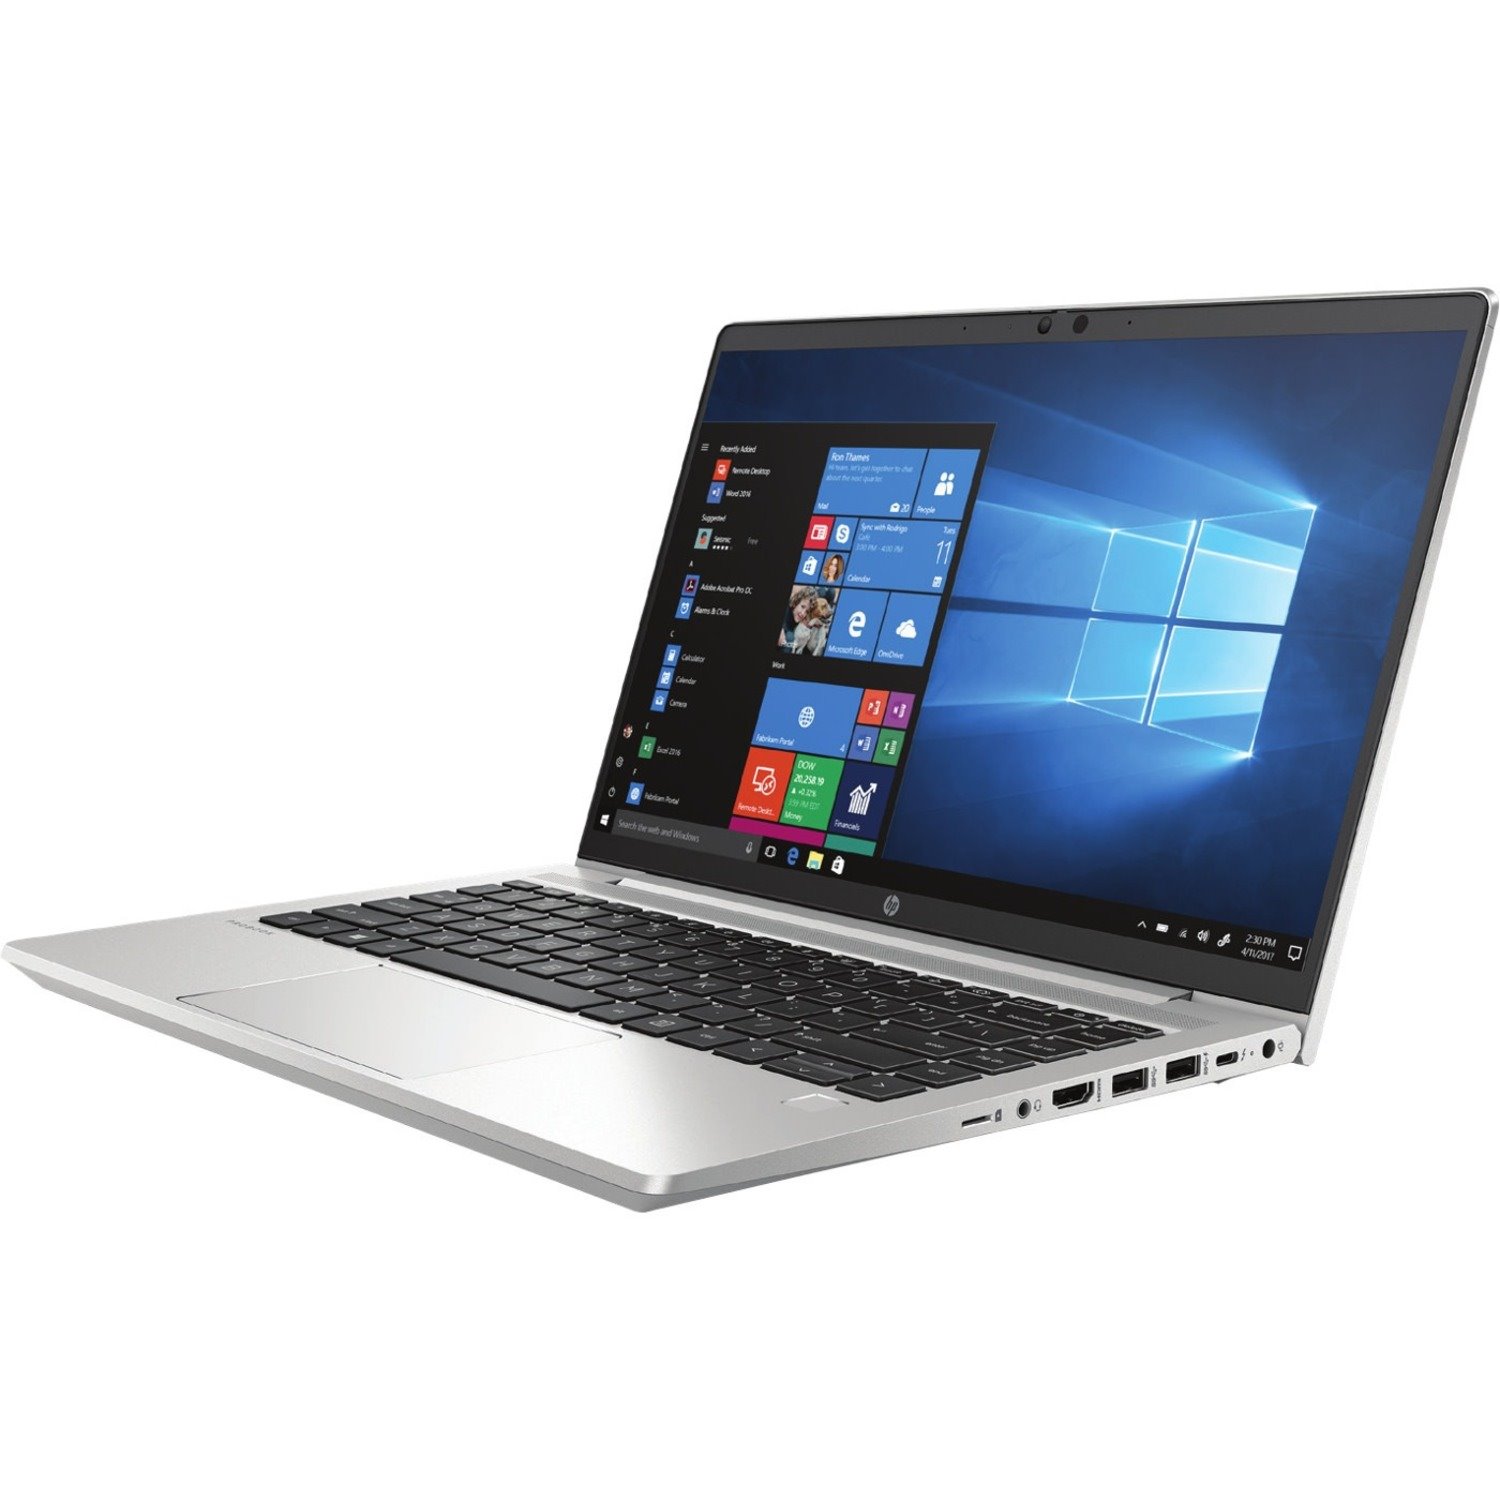 HP ProBook 640 G8 LTE Advanced, DC-HSPA+, HSPA+, UMTS 35.6 cm (14") Notebook - Full HD - 1920 x 1080 - Intel Core i7 11th Gen i7-1165G7 Quad-core (4 Core) - 8 GB Total RAM - 256 GB SSD